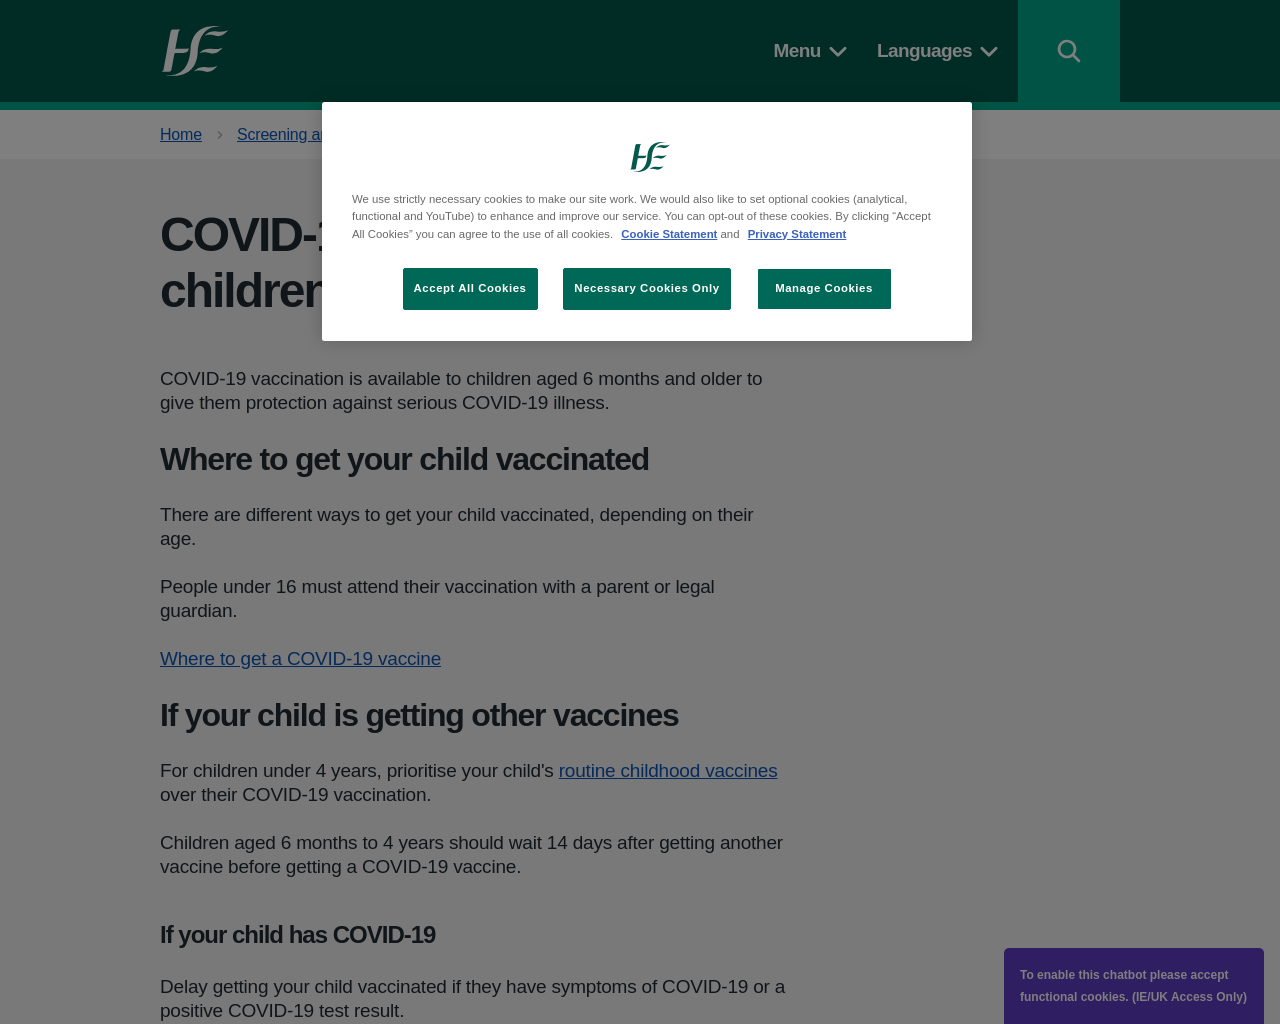 Covid Vaccine for Children